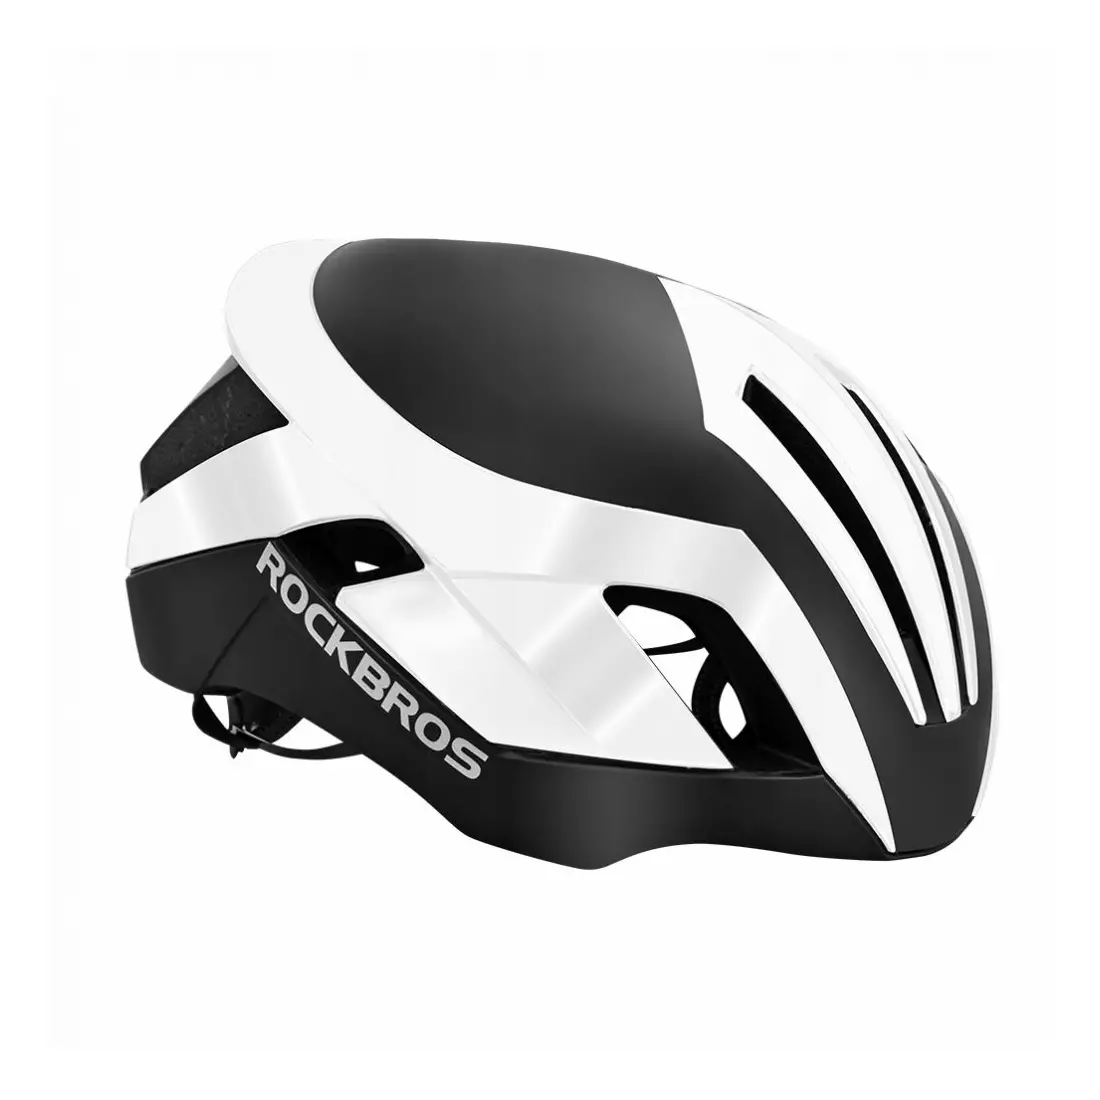 Rockbros Silniční cyklistická přilba  černý-bílý TT-30-W